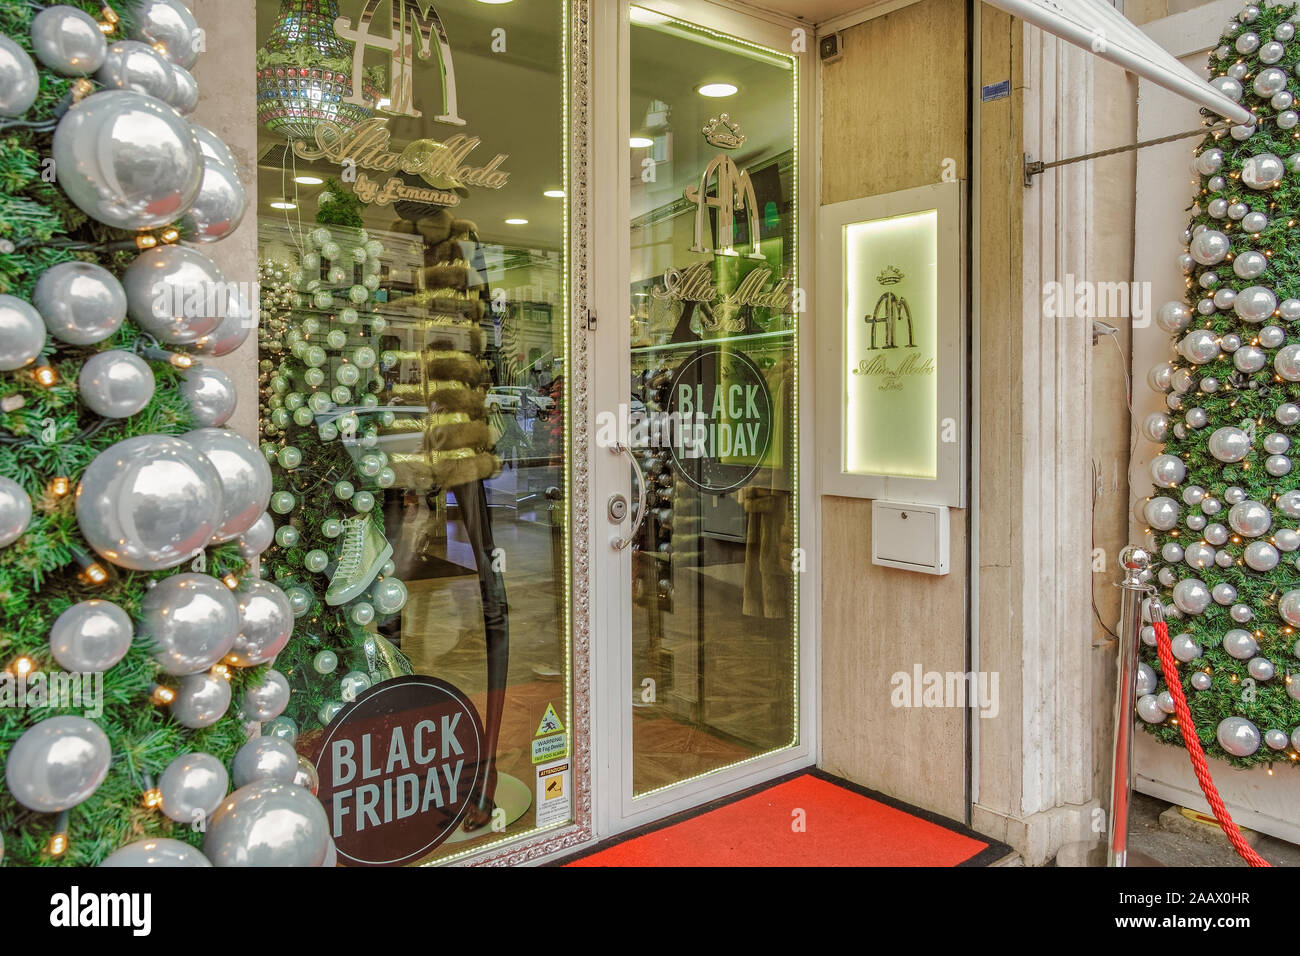 Rom, Italien Schwarzer Freitag Anzeige Titel auf Shop Eingang. Fenster Schaufenster der einen Shop mit Rabatt Schwarzer Freitag Zeichen und Weihnachtsschmuck. Stockfoto